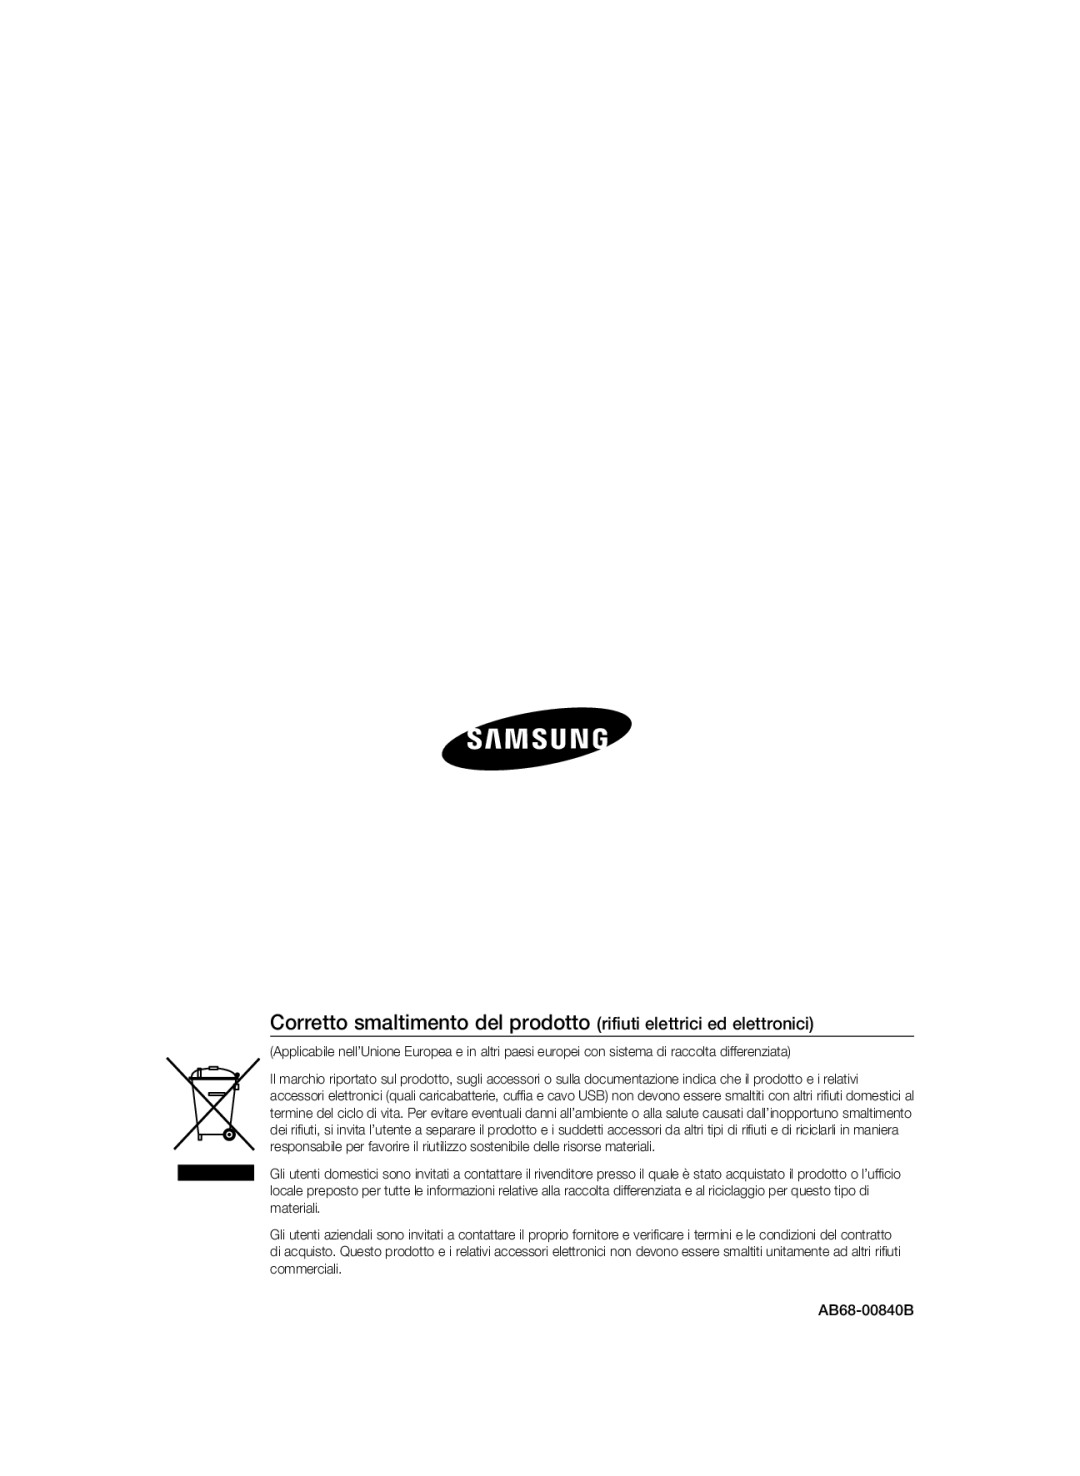 Samsung SCC-B2337P, SCC-B2037P manual Corretto smaltimento del prodotto rifiuti elettrici ed elettronici, AB68-00840B 